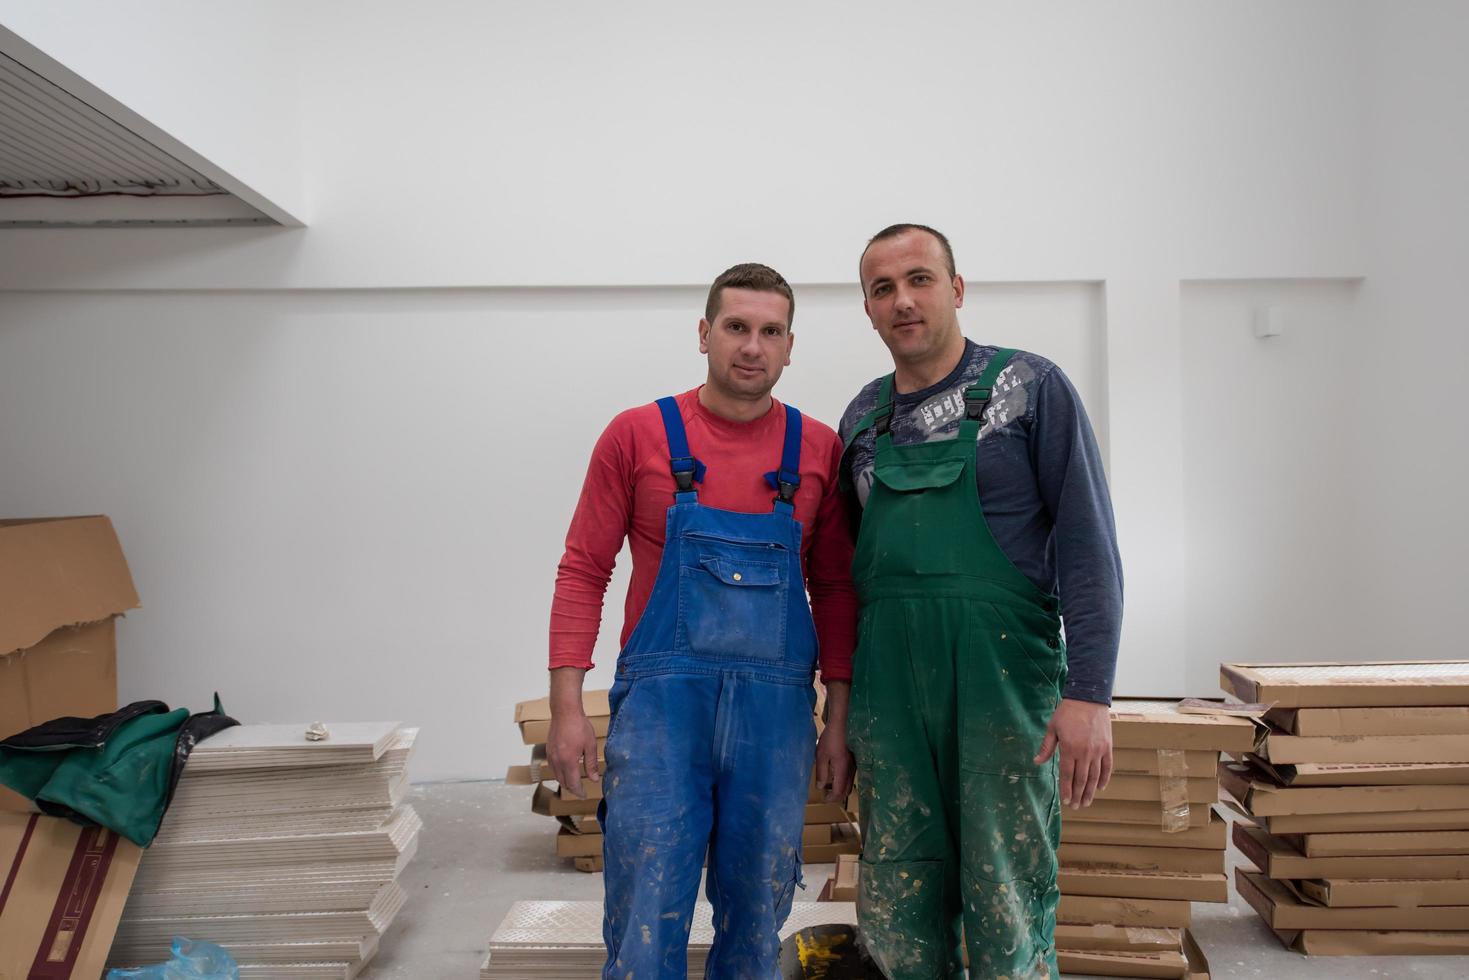 porträtt av arbetare och byggare med smutsig enhetlig i lägenhet foto